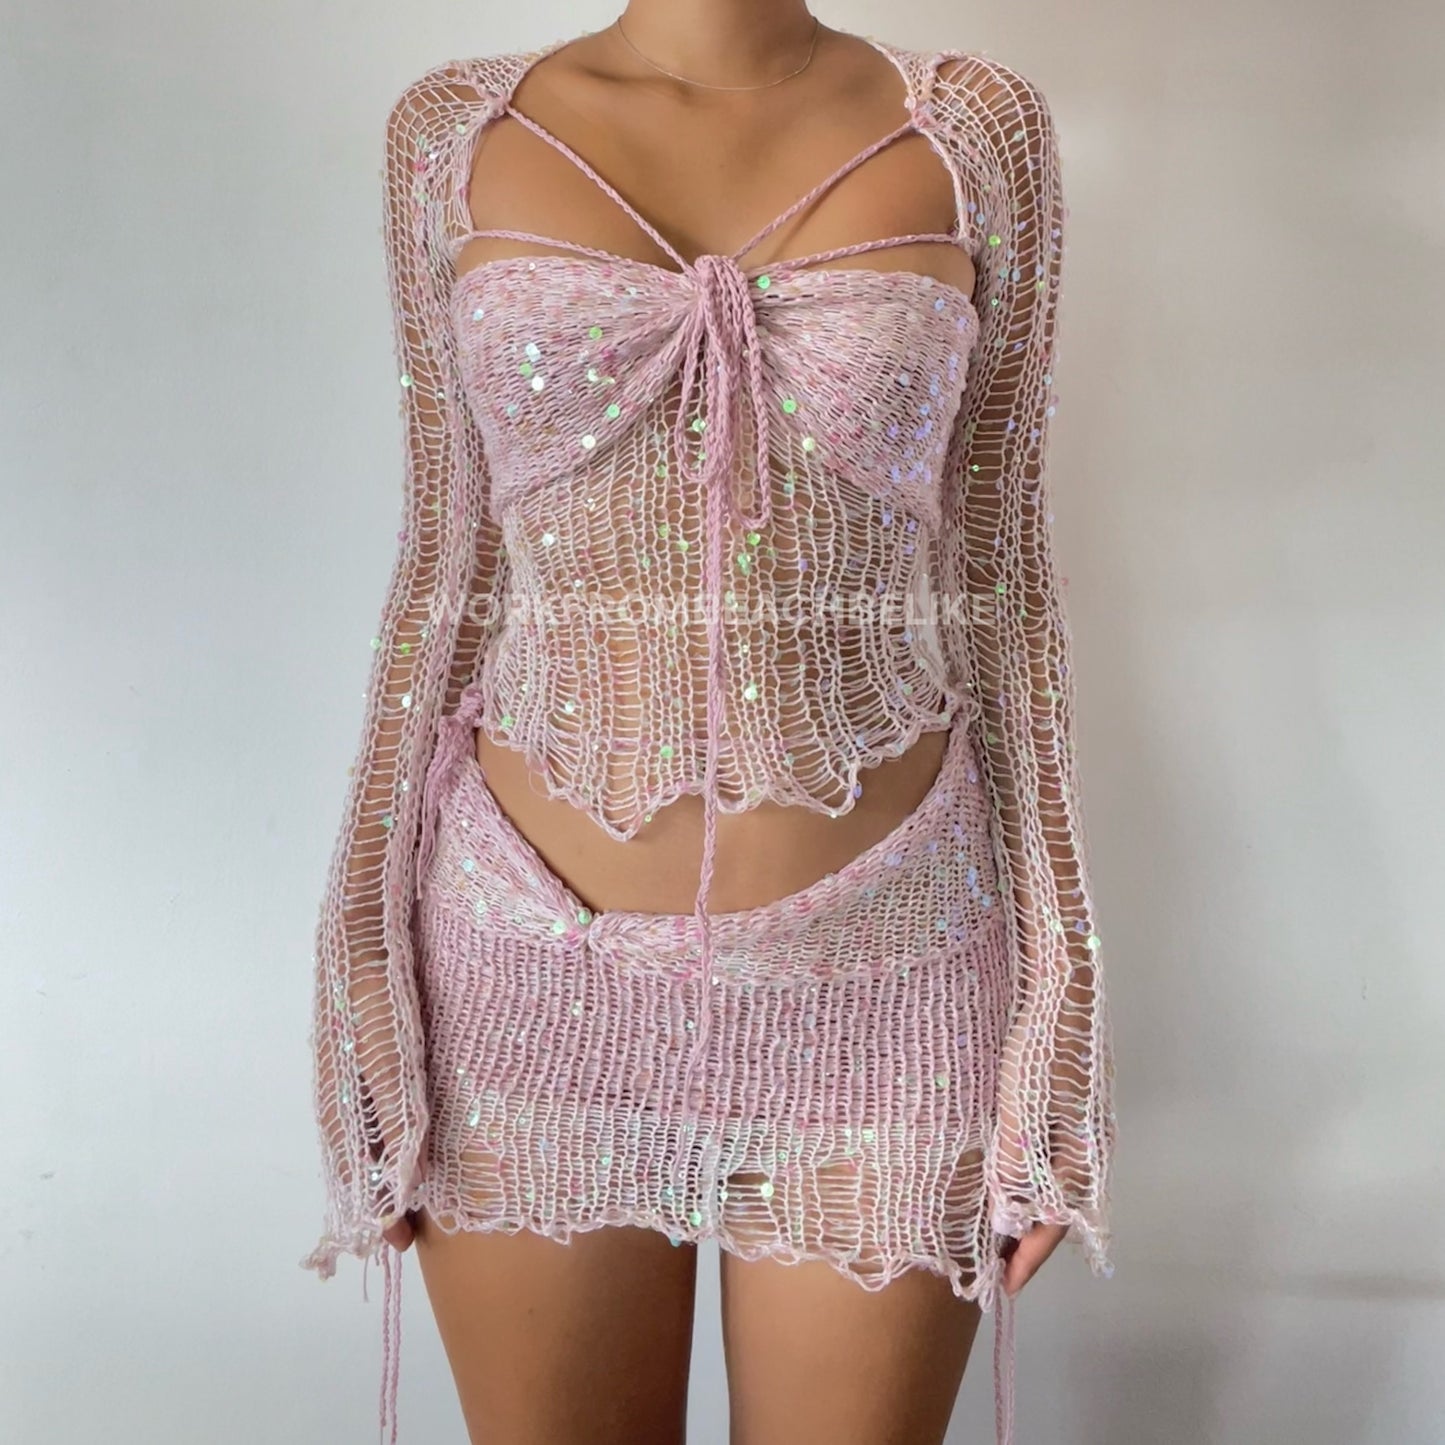 Butterfly set (Top & Skirt) - Pink